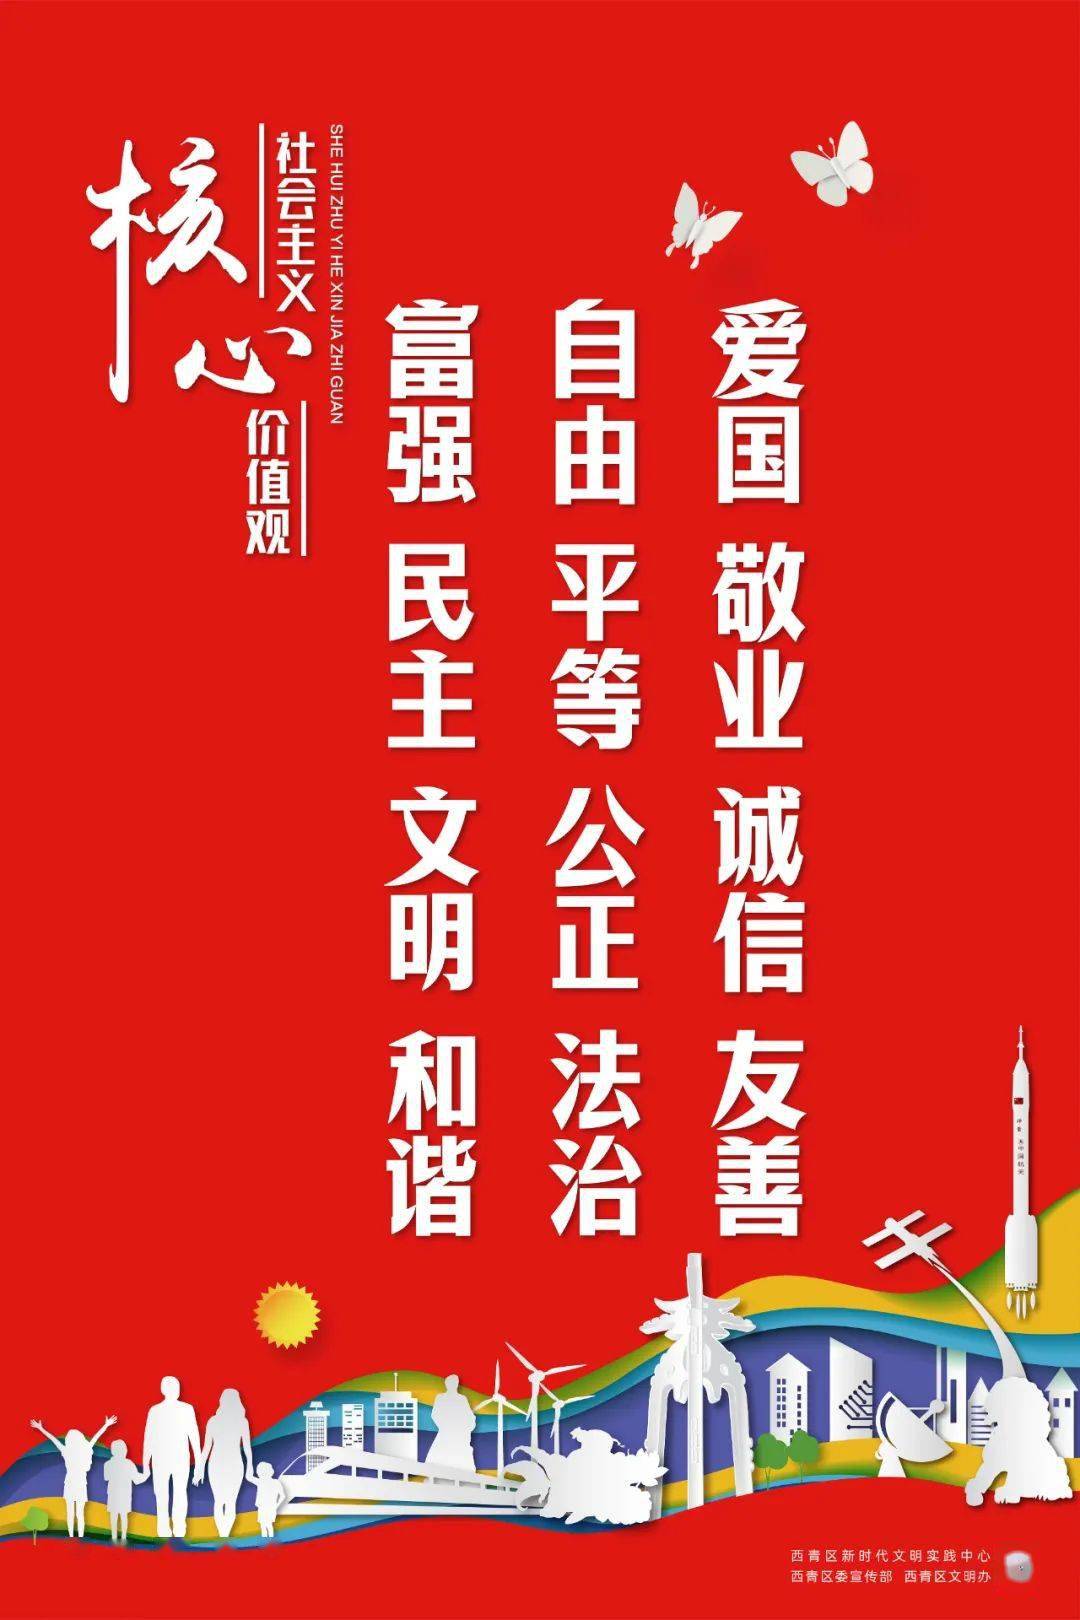 西青区原创公益广告展播丨社会主义核心价值观系列